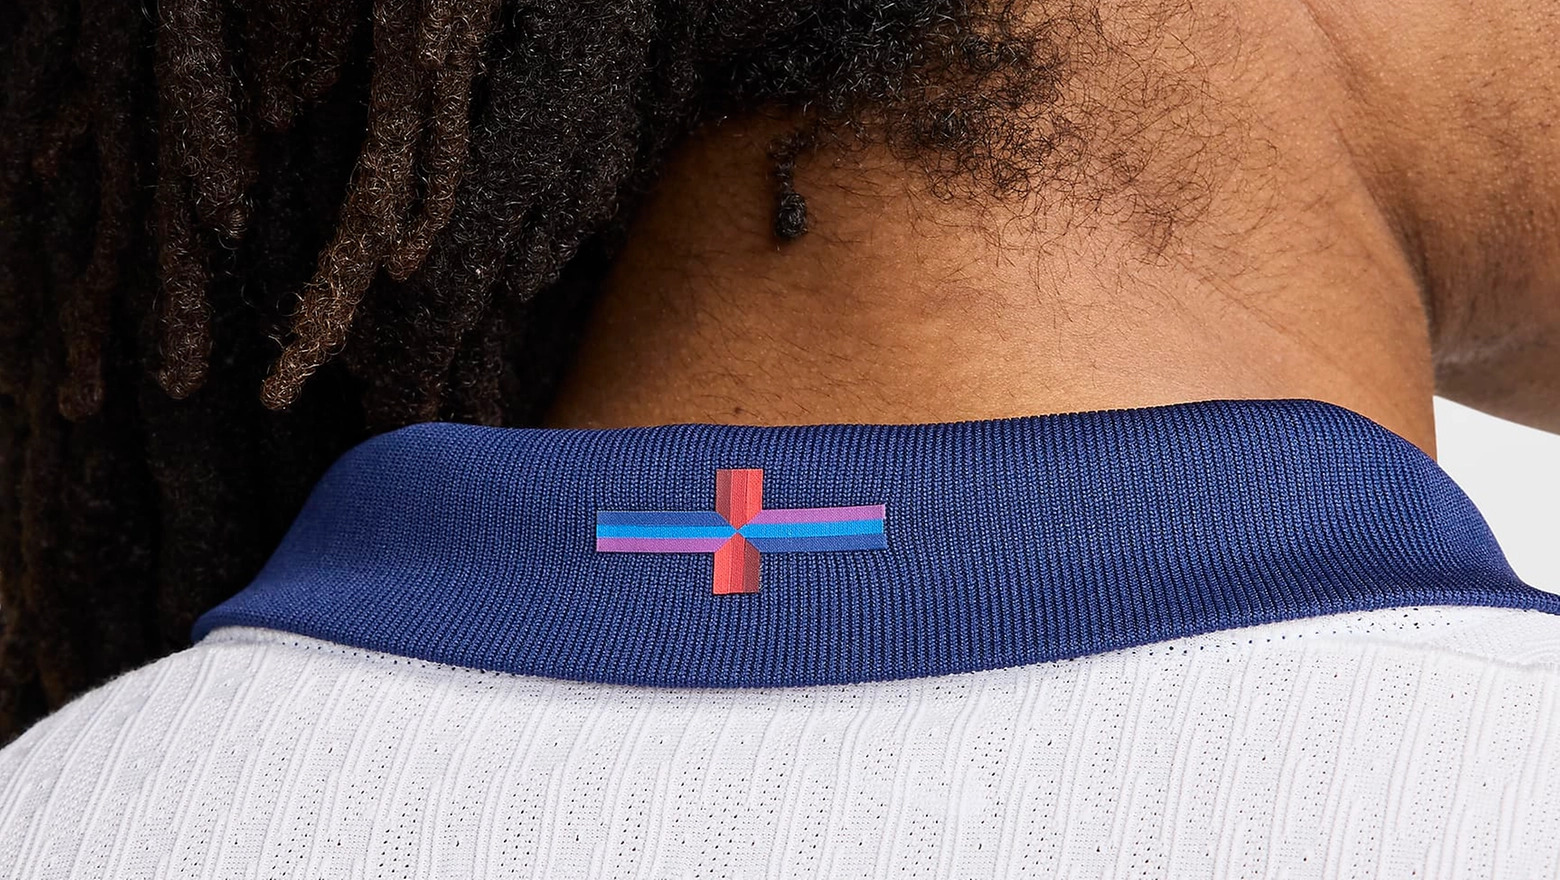 La croce di San Giorgio sulla nuova divisa (sito Nike)